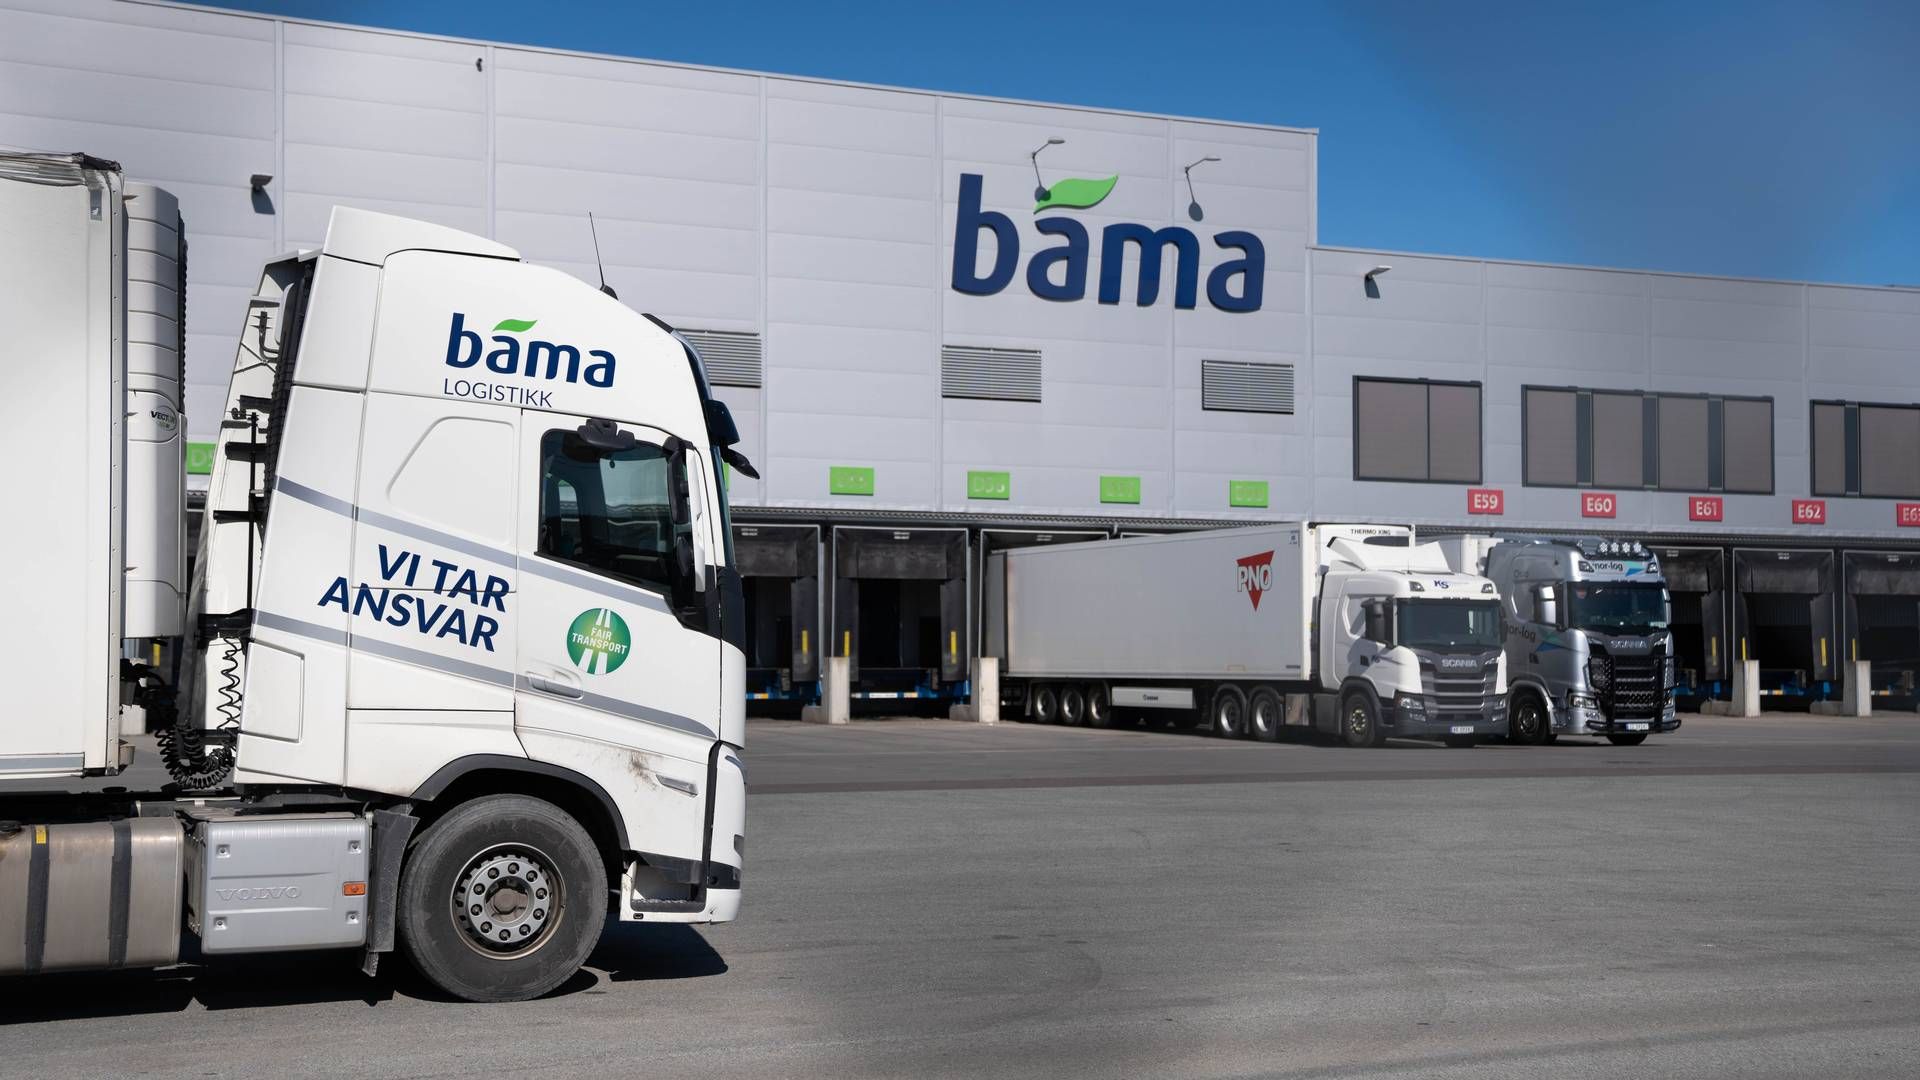 LASTEBILER: Bamas lastebiler står fast i Frankrike. | Foto: Lars Thomas Nordby / NTB